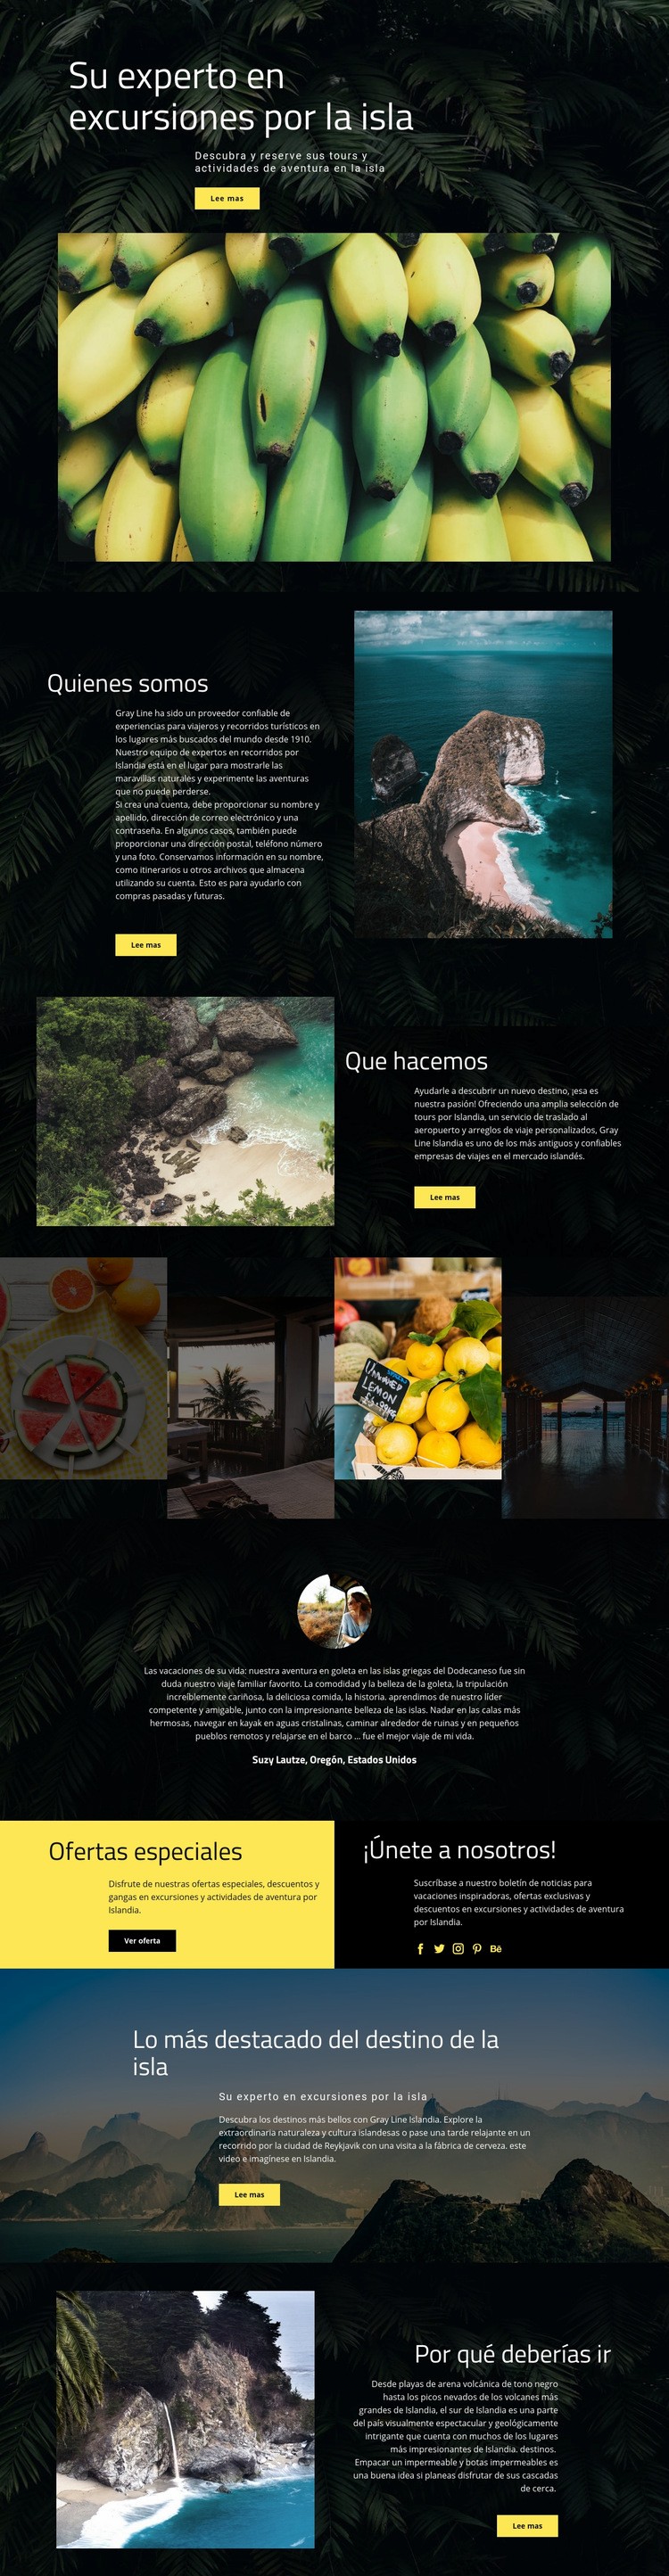 Viaje a la isla Diseño de páginas web